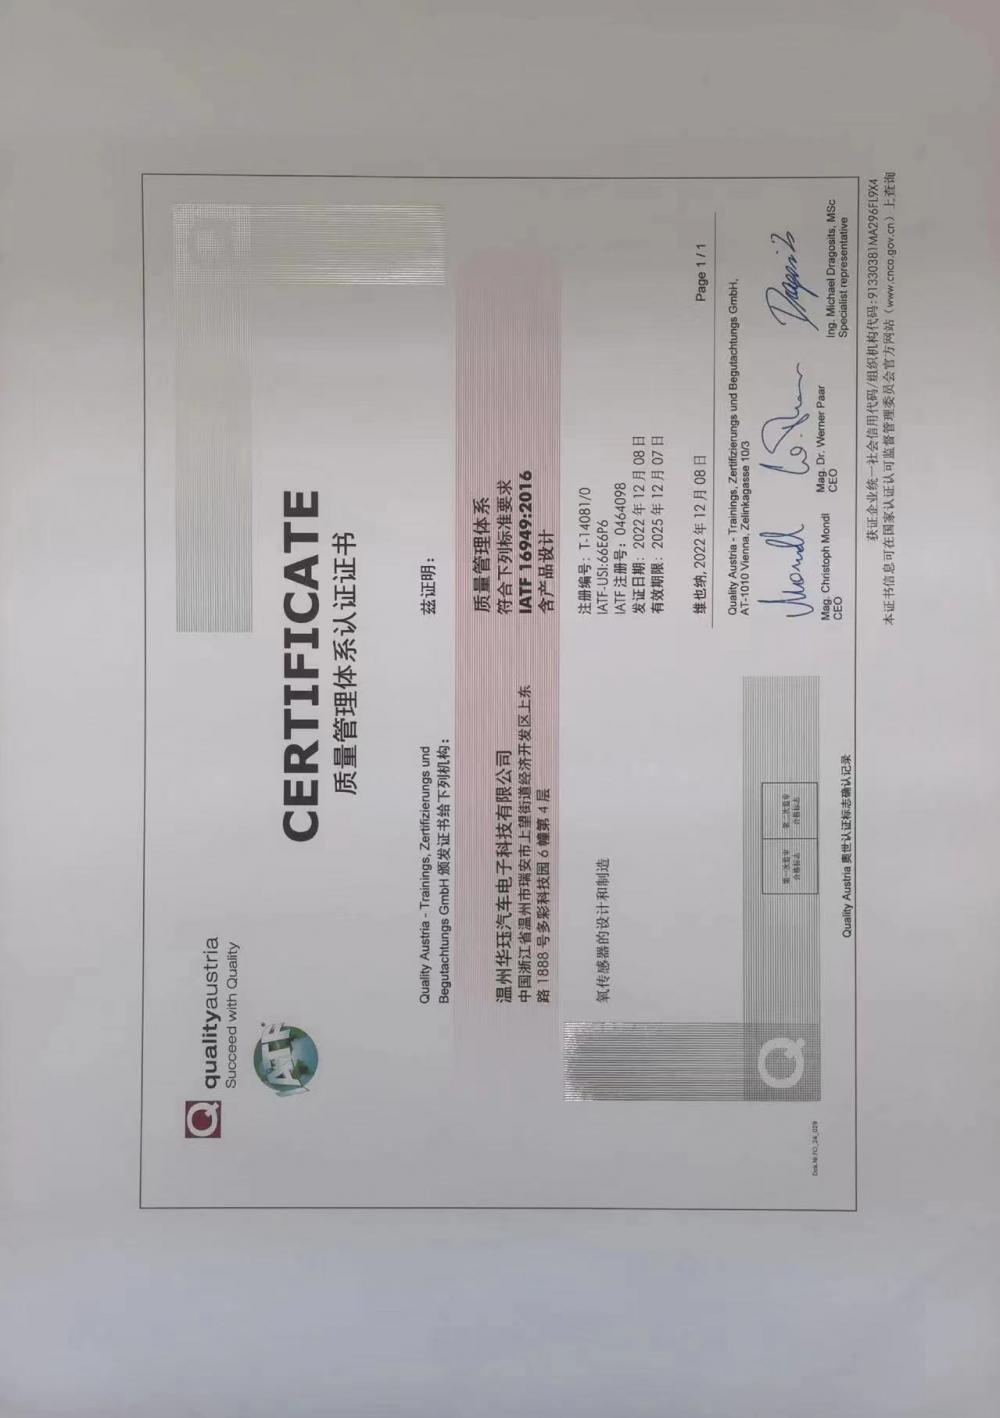 16949 certificate